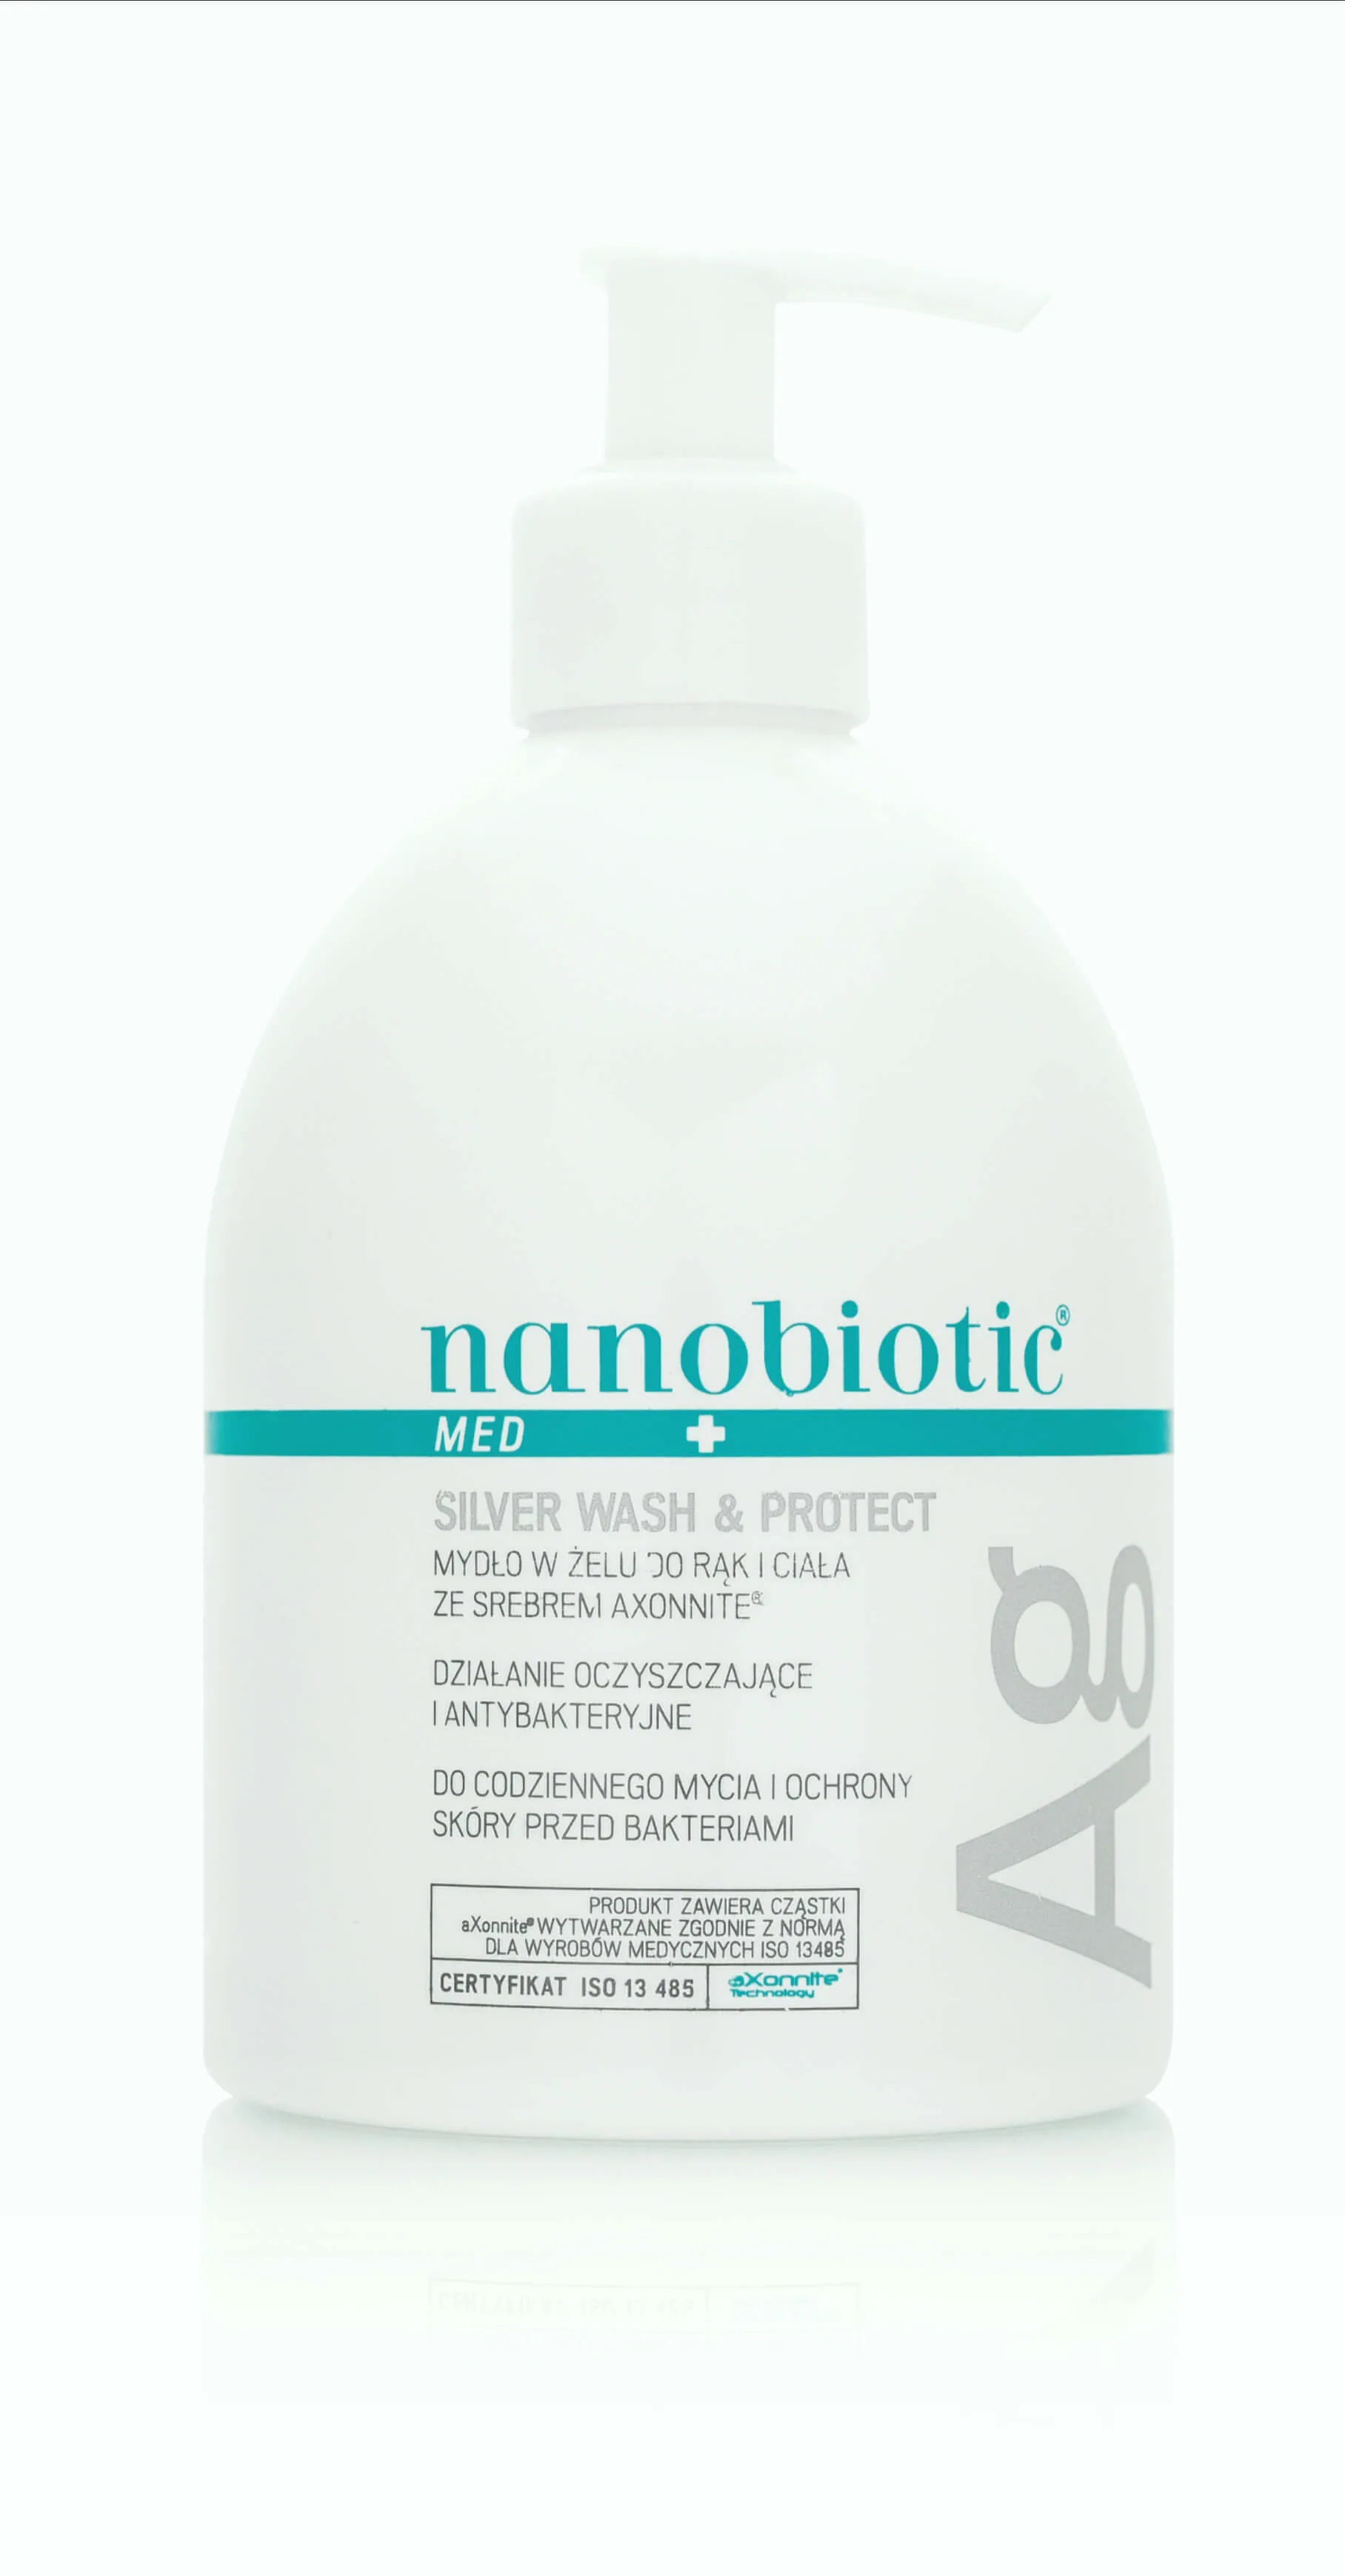 Nanobiotic Med Silver Wash Protect, mydło w żelu do rąk i ciała ze srebrem aXonnite, 500ml